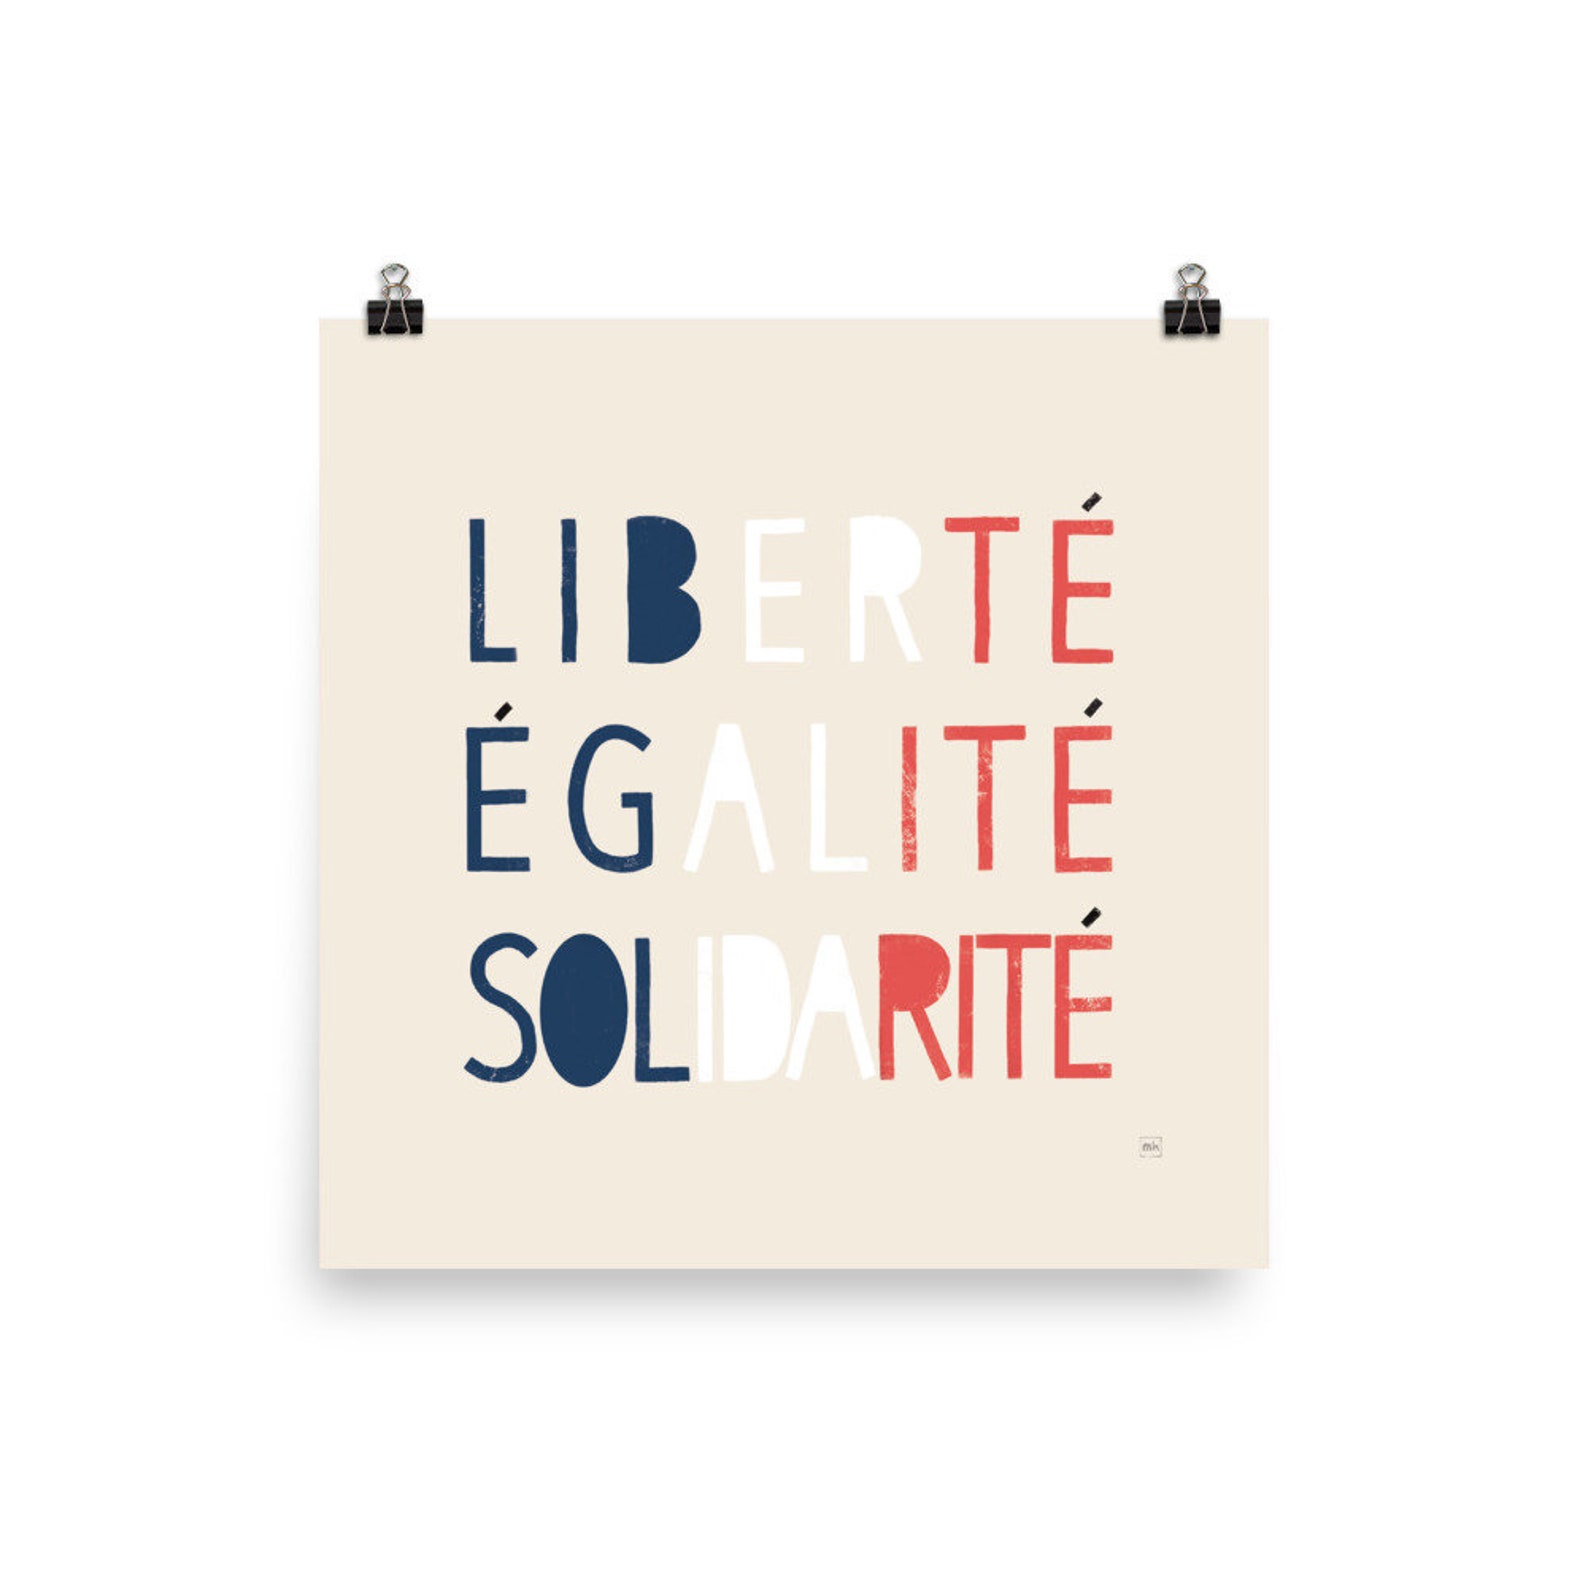 Liberté Égalité Solidarité Typography Print Square French | Etsy